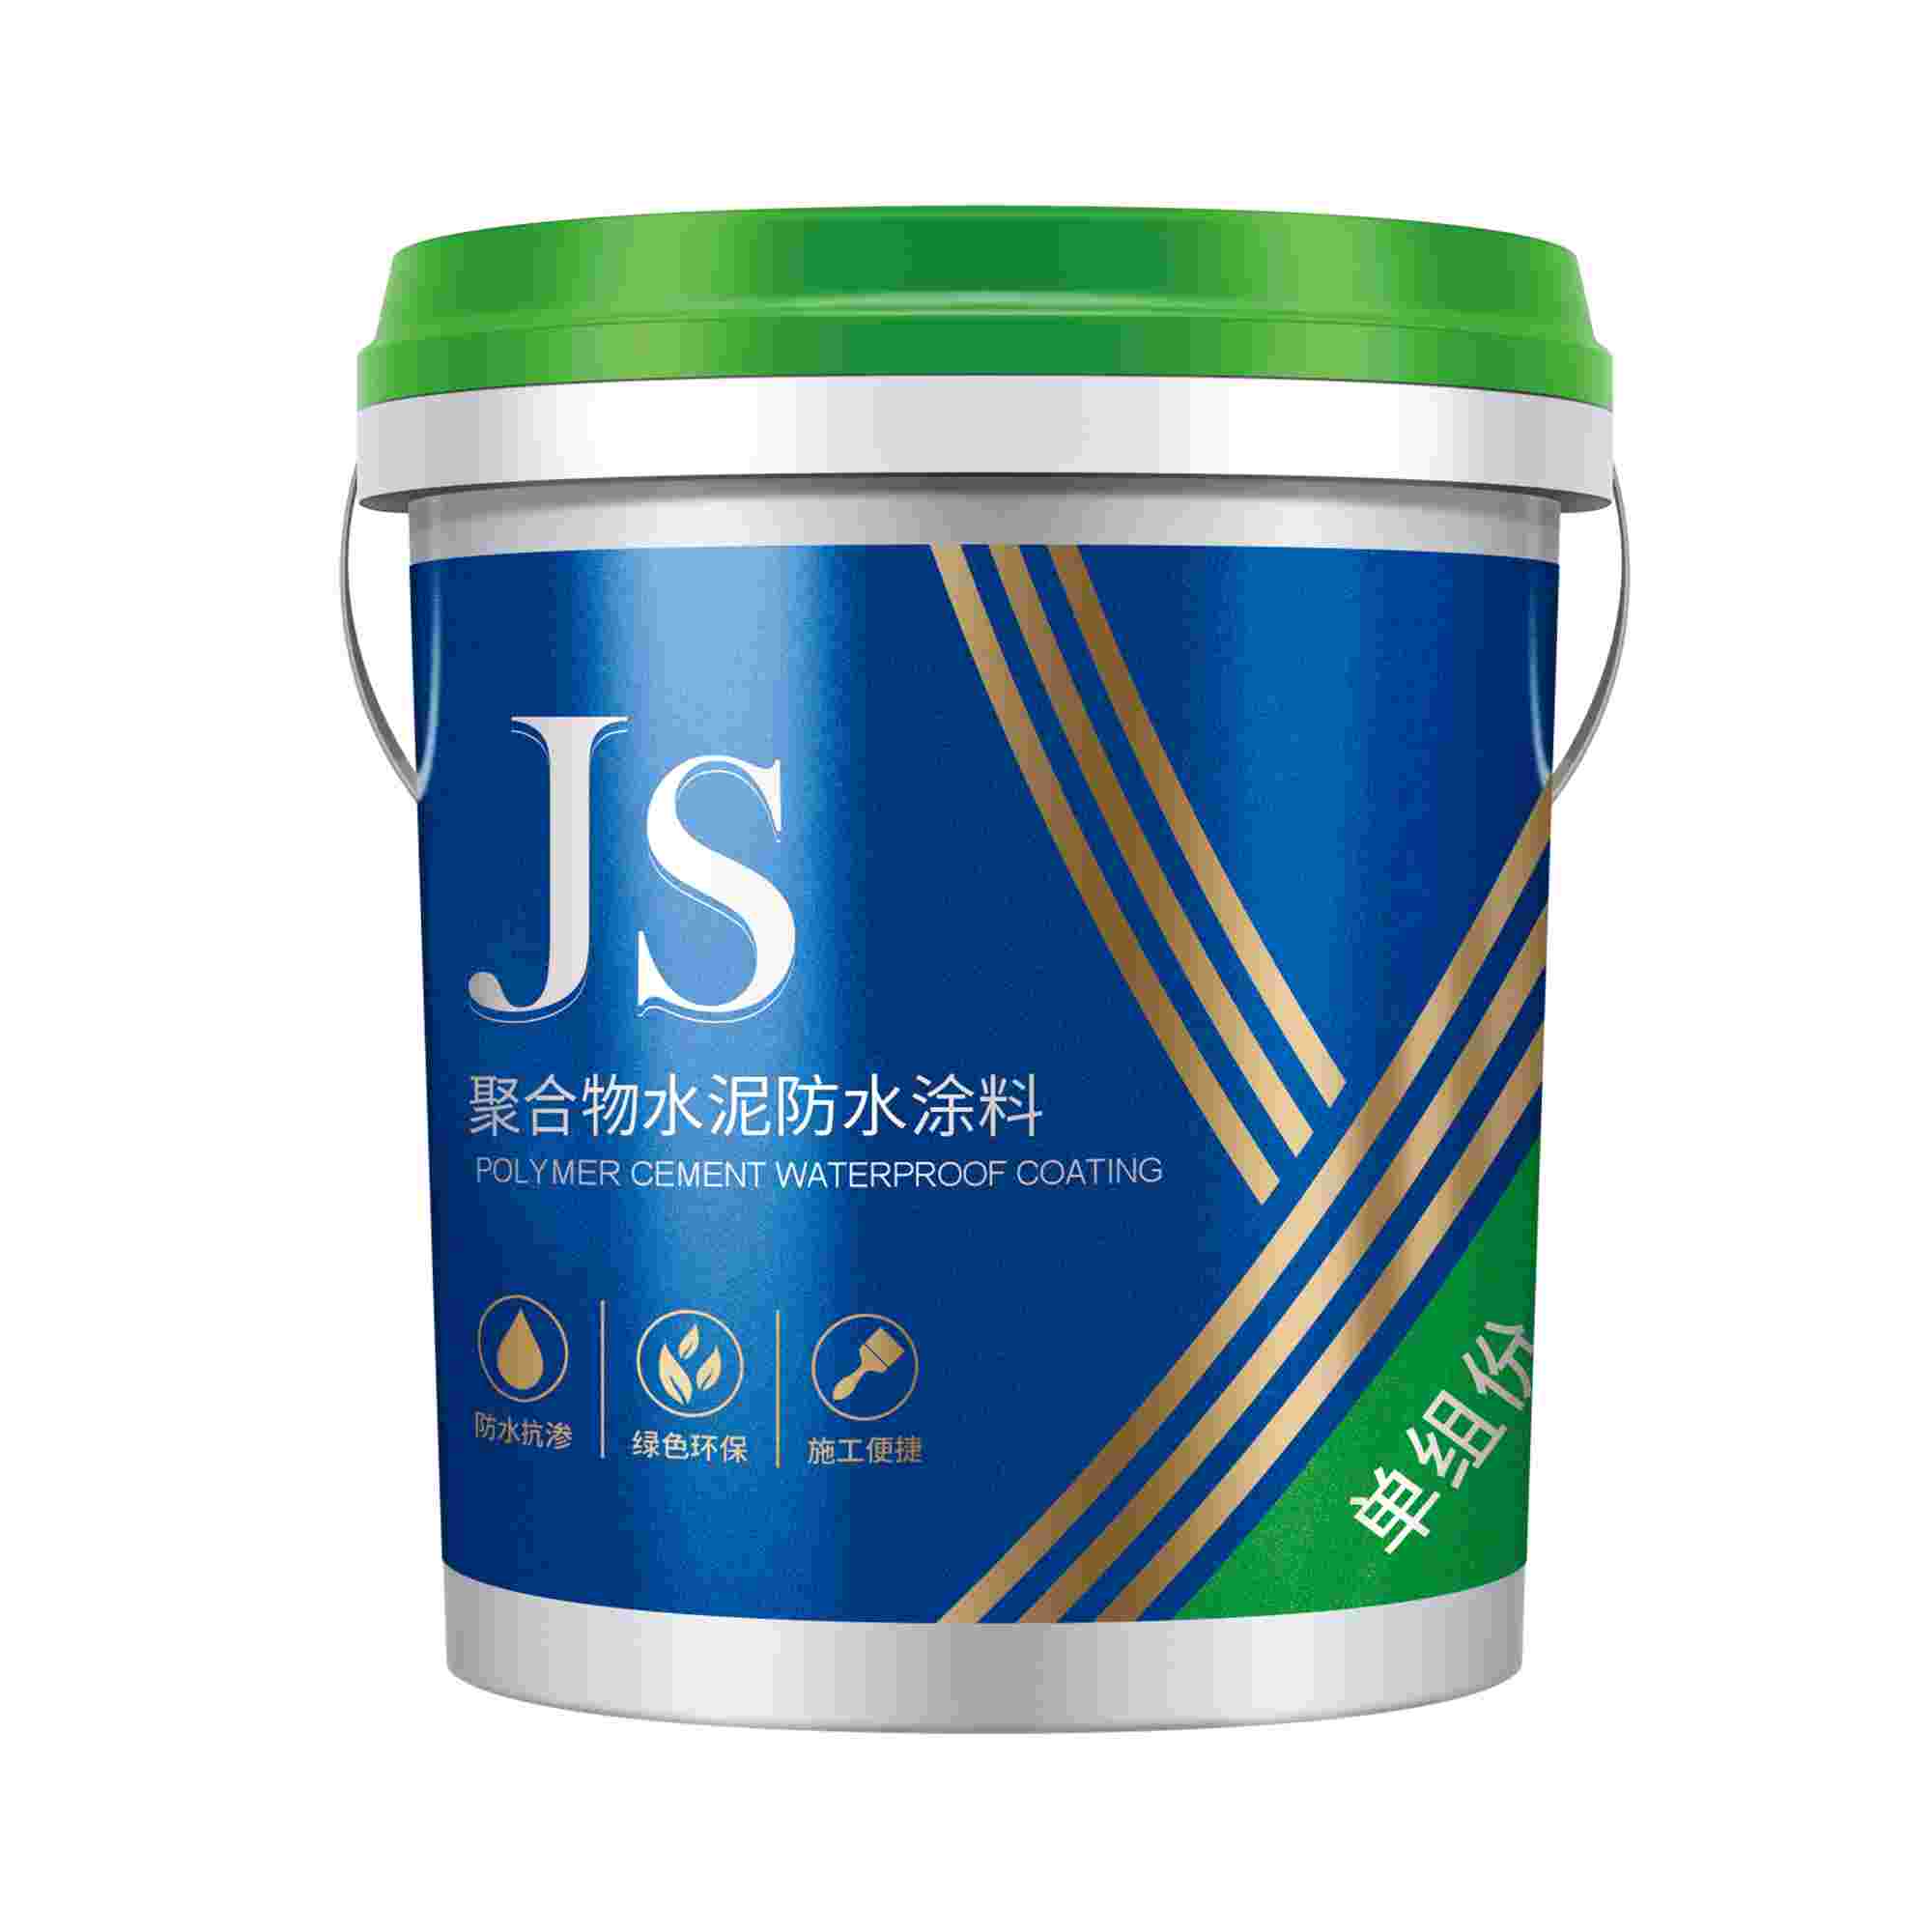 JS聚合物水泥防水涂料-单-国标